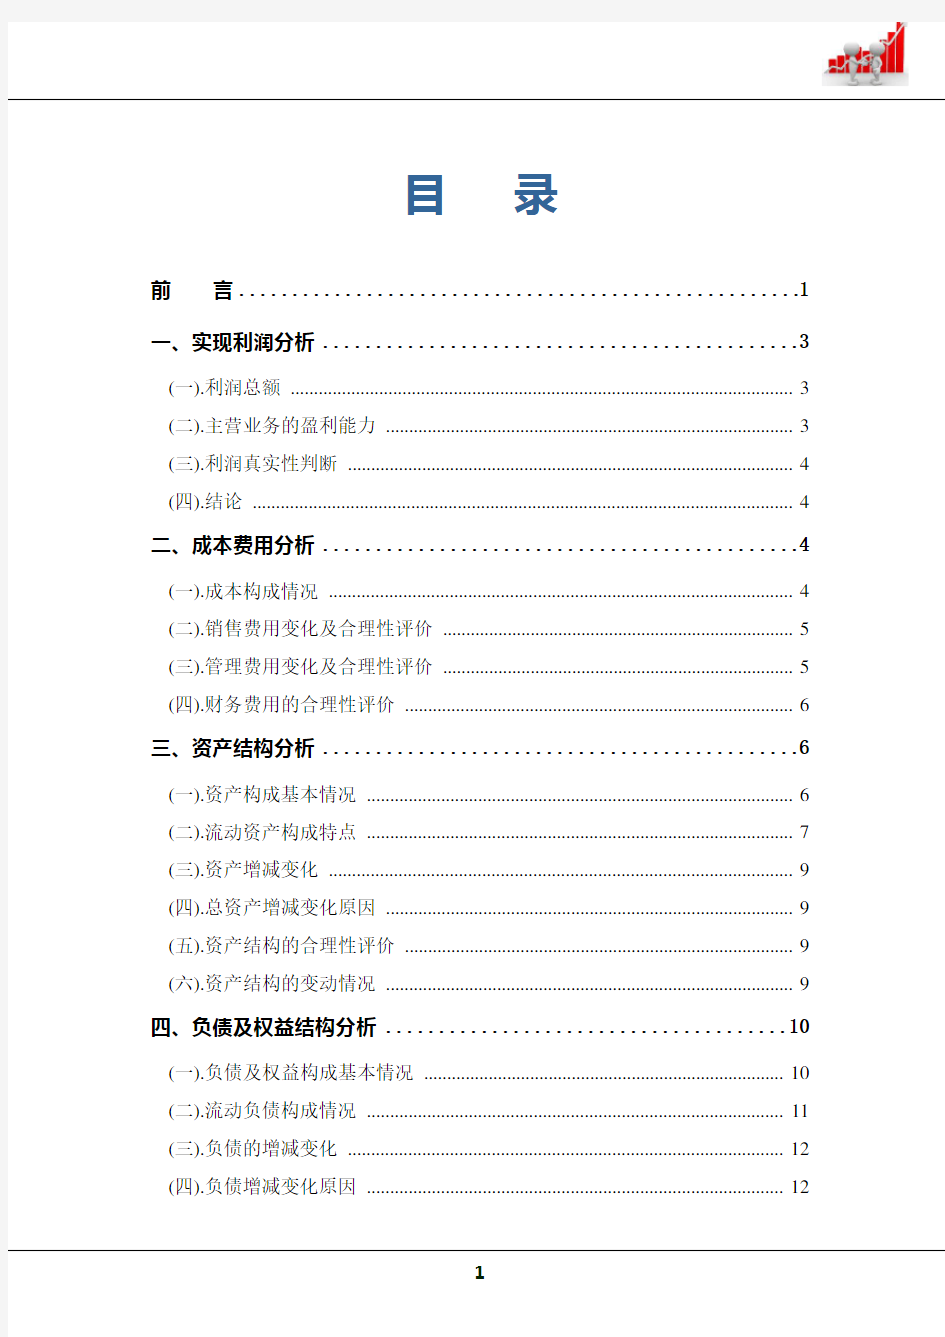 2019年贵州茅台公司财务分析总结性研究报告